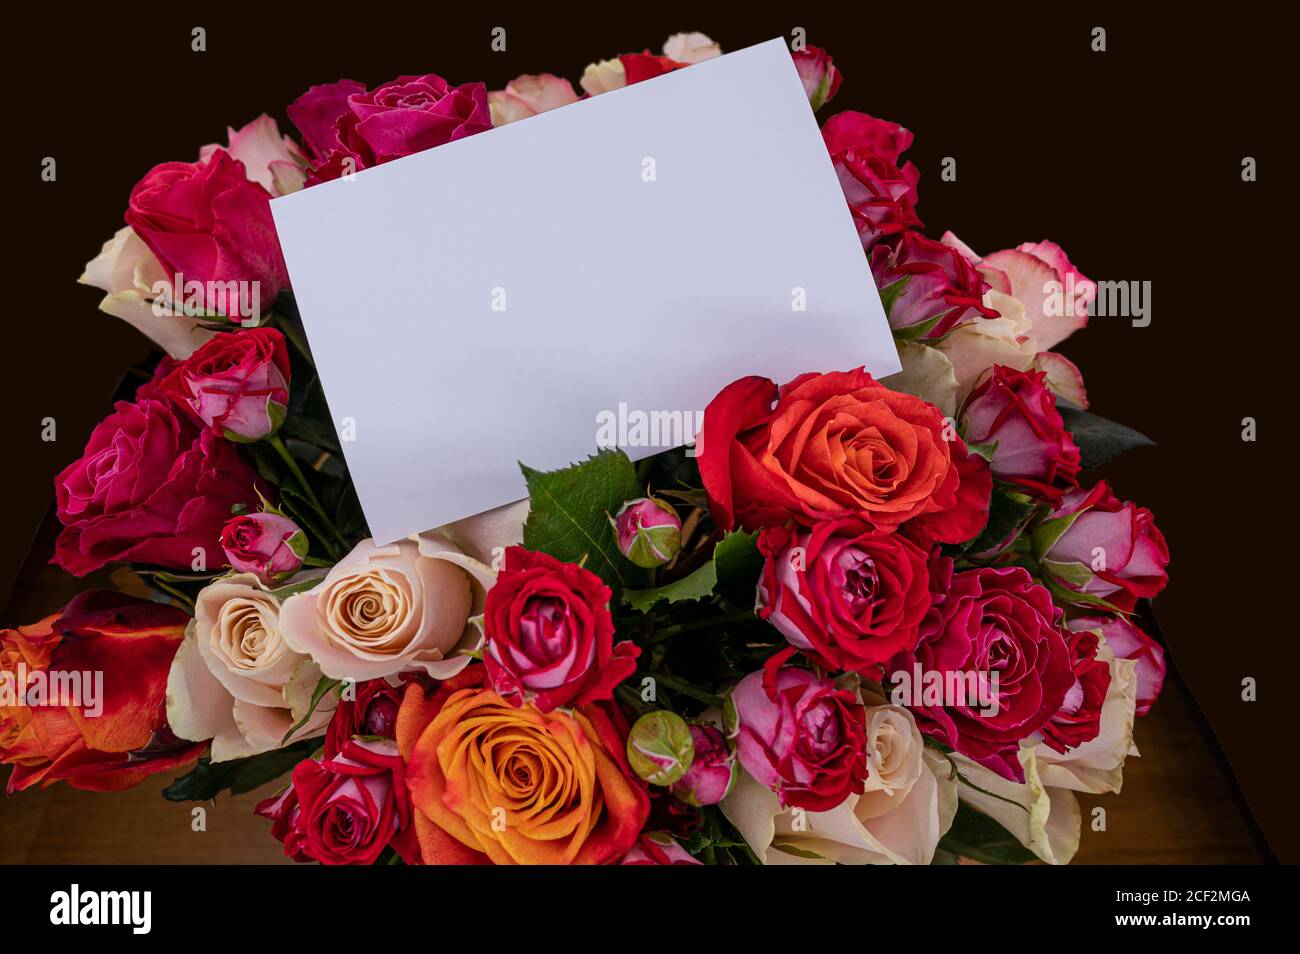 Bouquet de roses rouges, roses et jaunes avec carte vide. Modèle pour les  cartes d'anniversaire, de mariage, de fête des mères et de Saint-Valentin  Photo Stock - Alamy